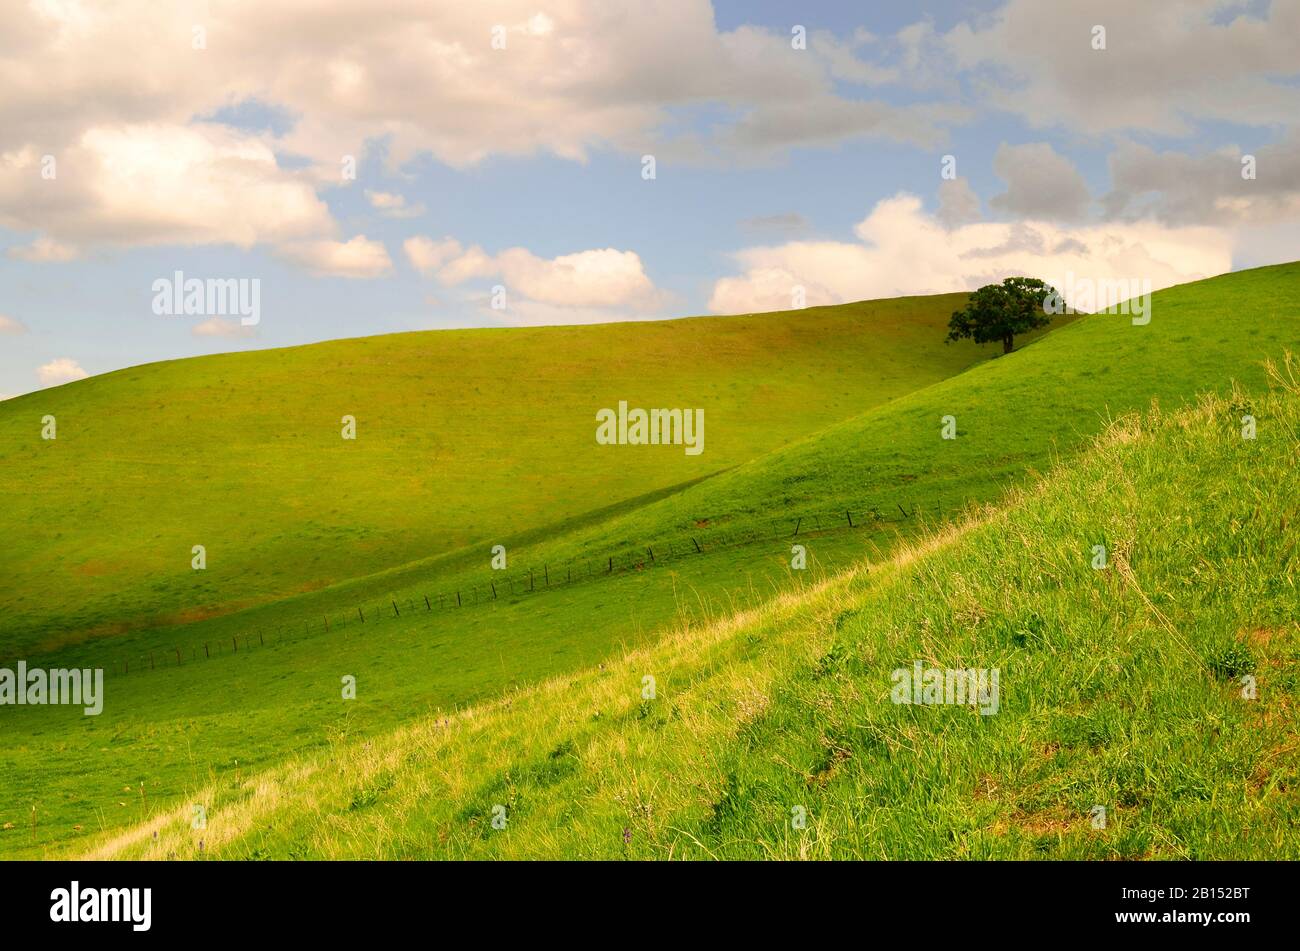 Quercia albero immerso nella valle in cima verde colline erbose e cielo blu con nuvole bianche, Antiochia, California, Contra Costa County, Stati Uniti Foto Stock